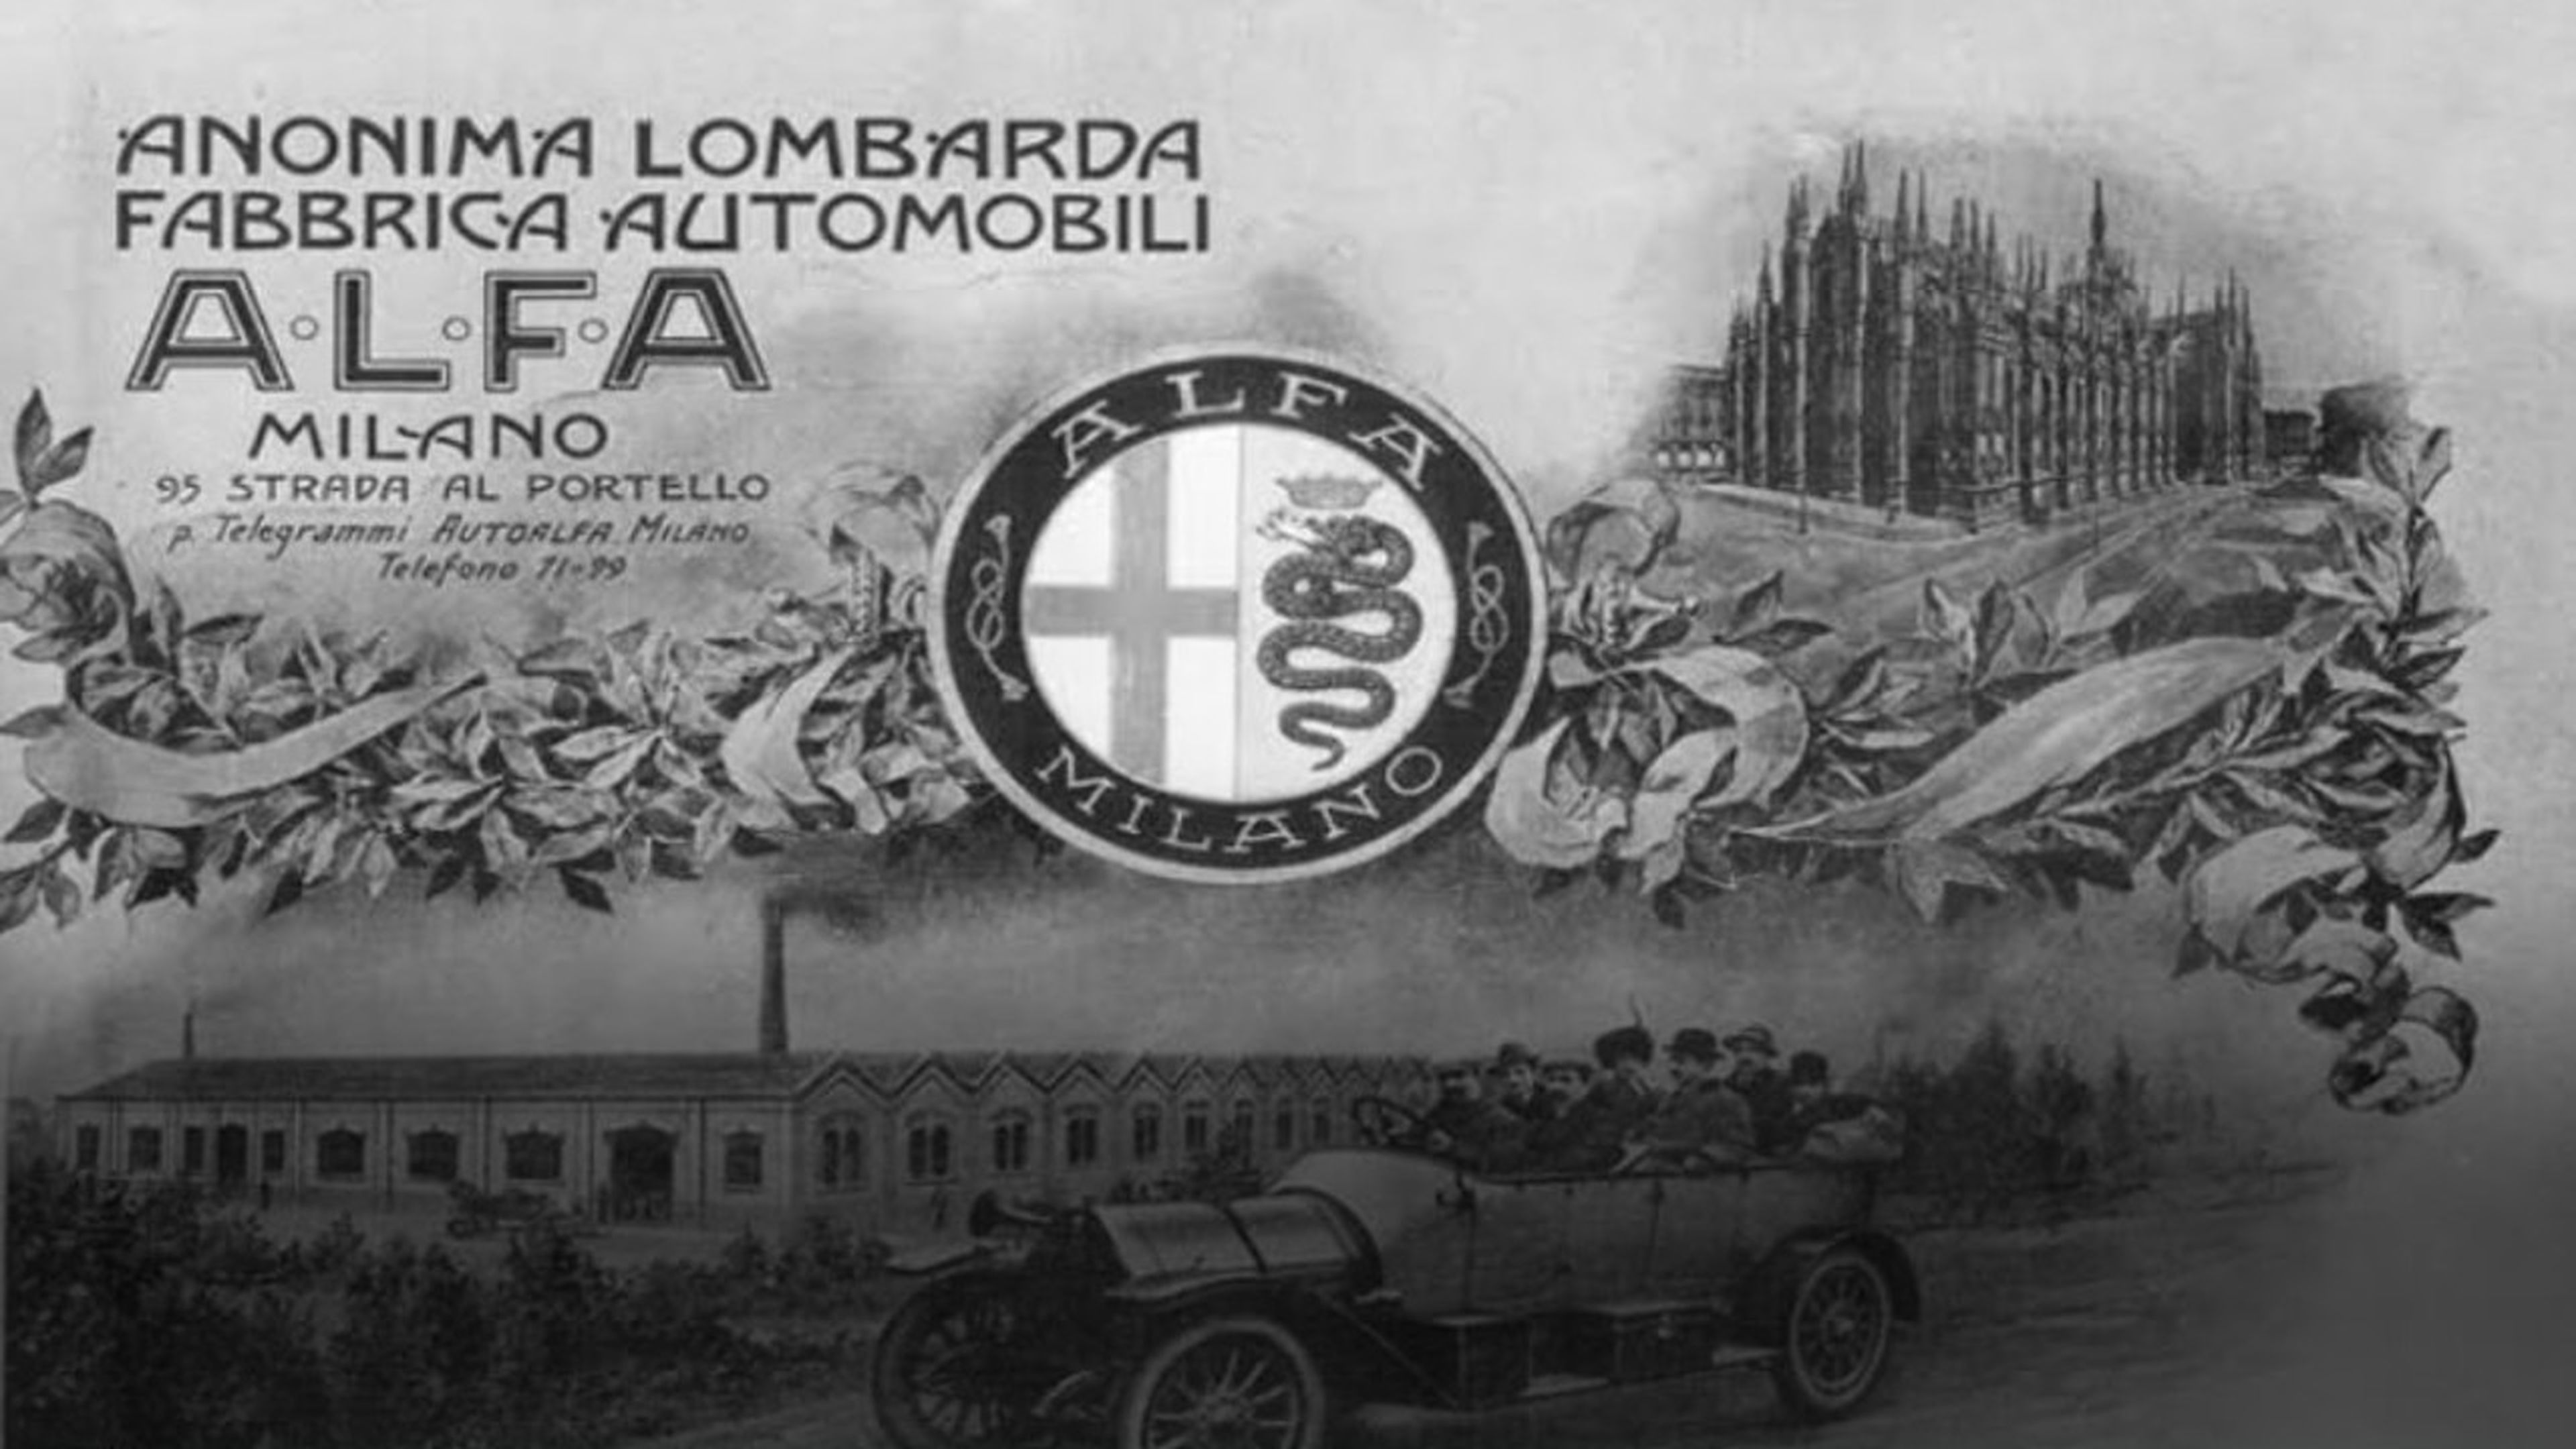 Origen del nombre Alfa Romeo